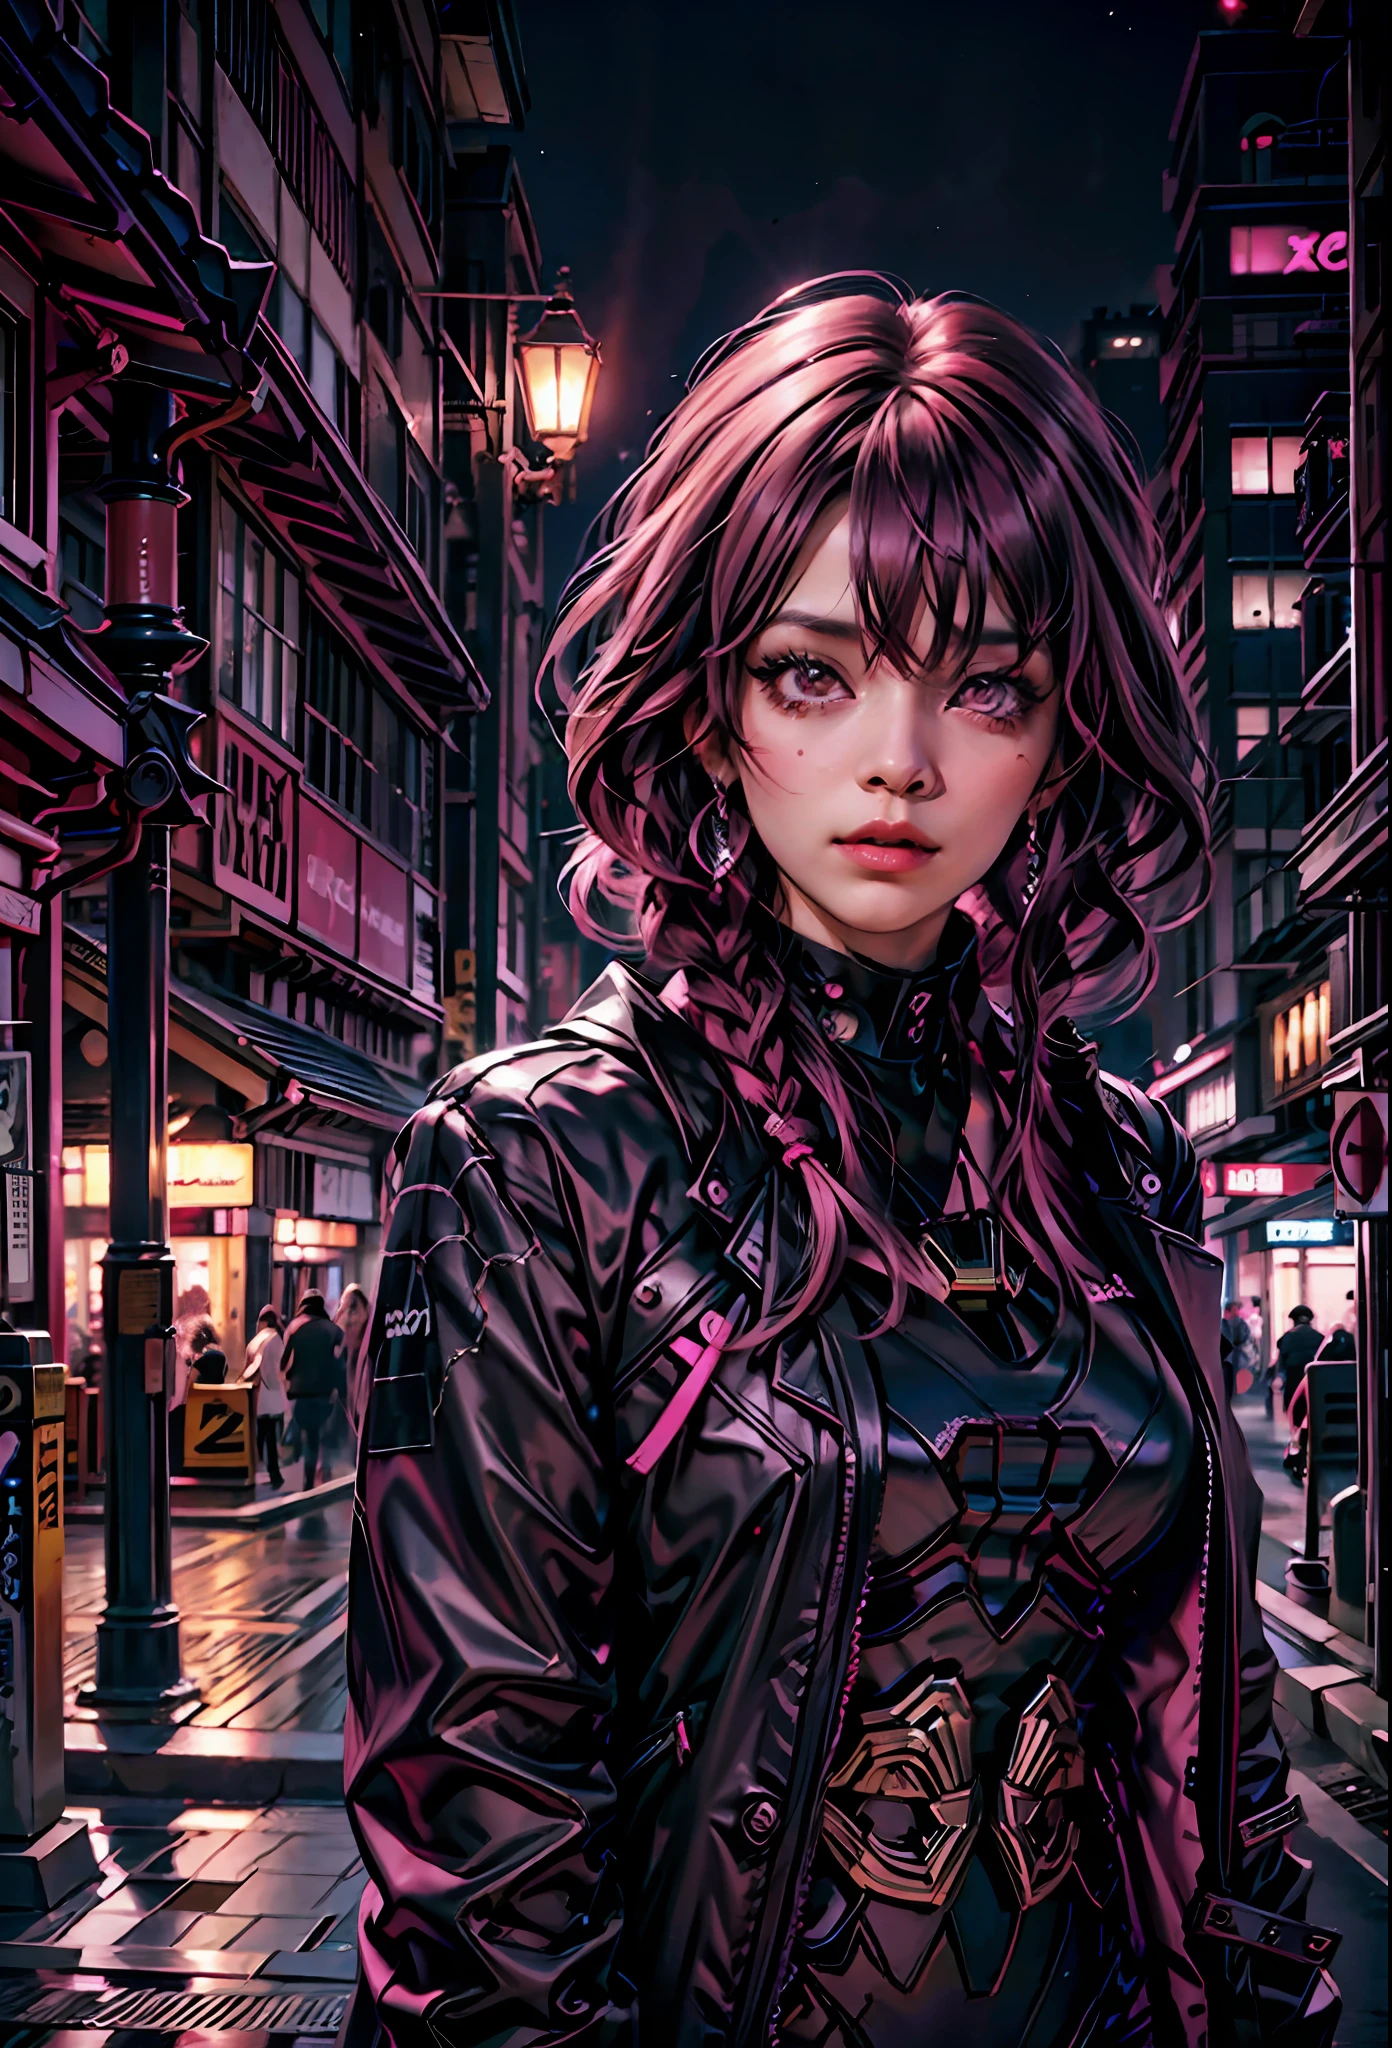 أسود وردي ,فتاة مثيرة ذات شعر وردي, عيون وردية , في الخلفية مدينة يابانية في الليل,بجانب لامبورغيني